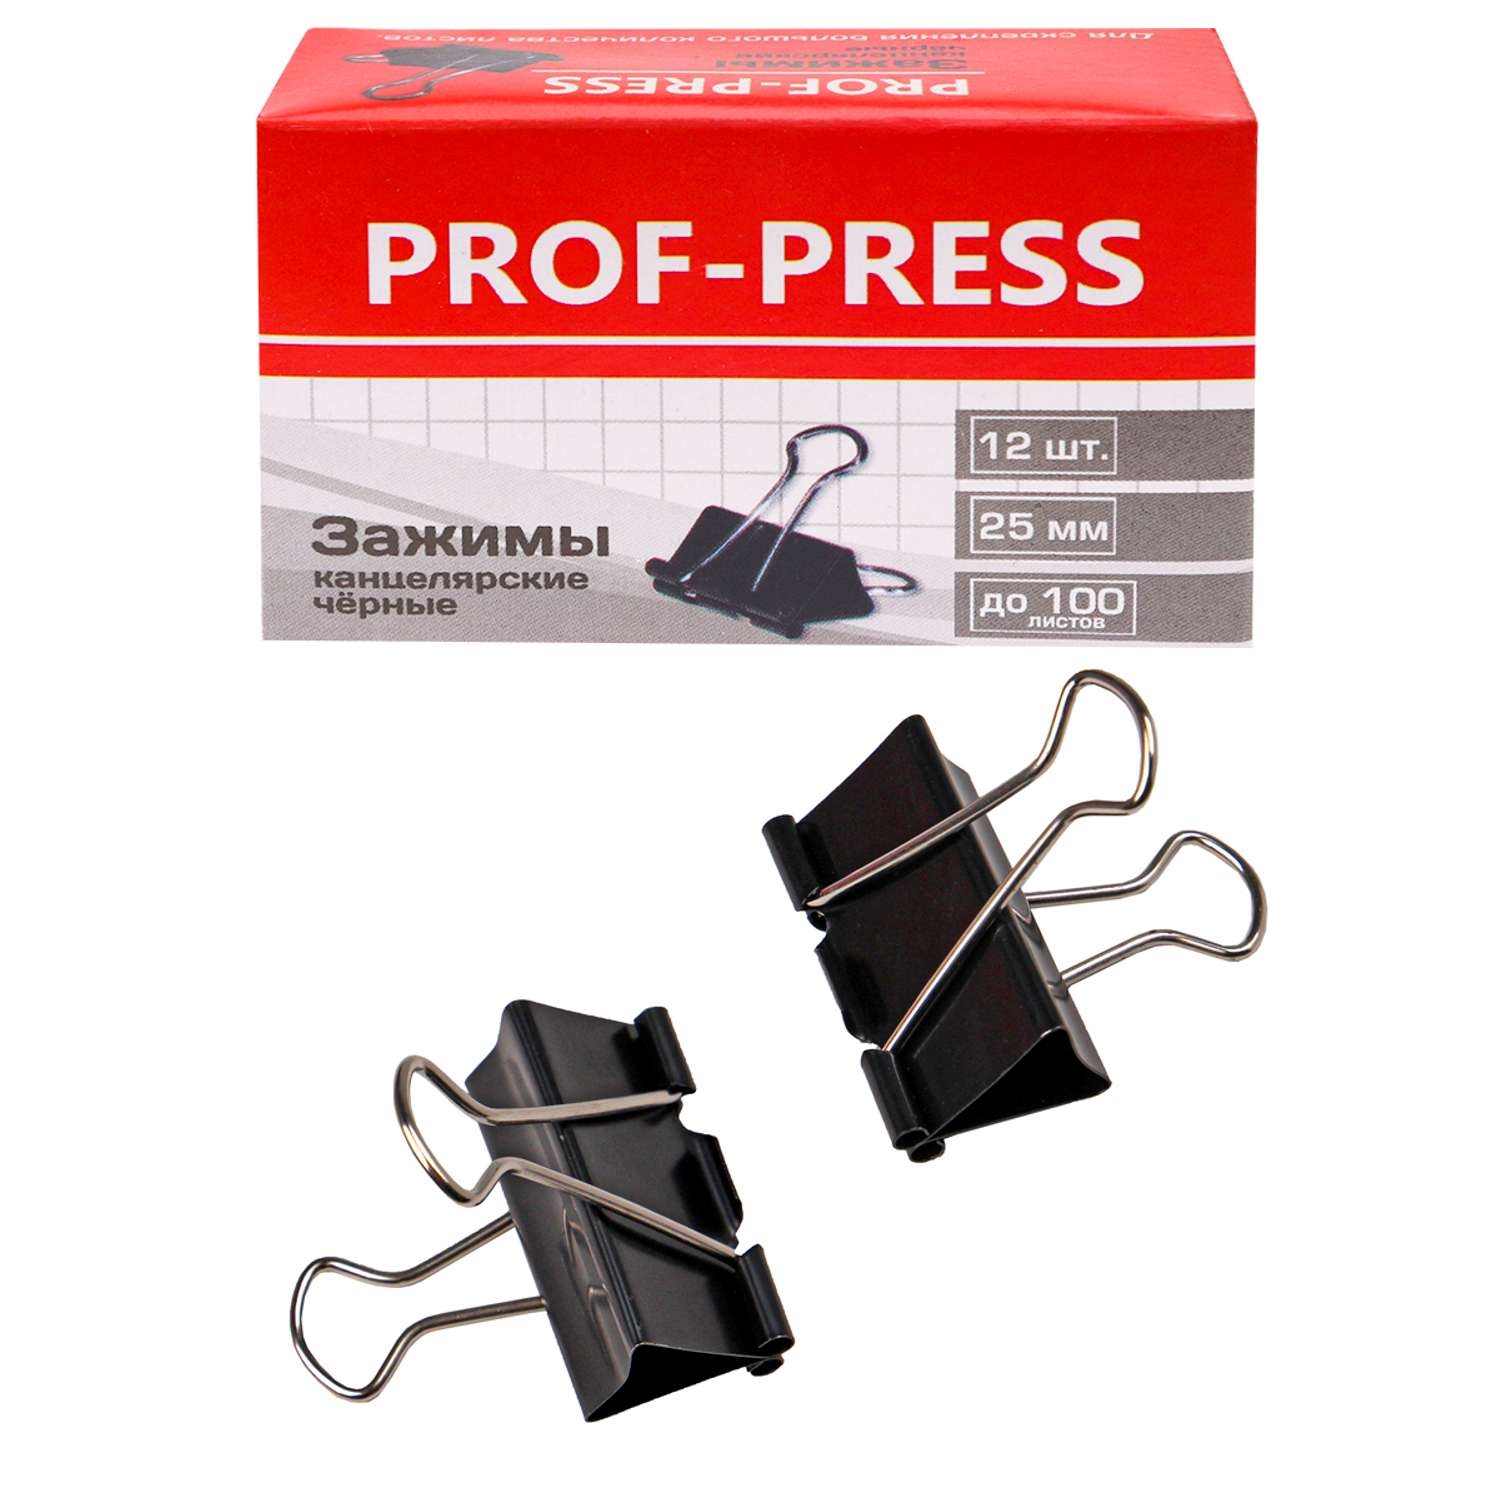 Зажим для бумаг Prof-Press черный 25мм набор 12шт коробке - фото 1